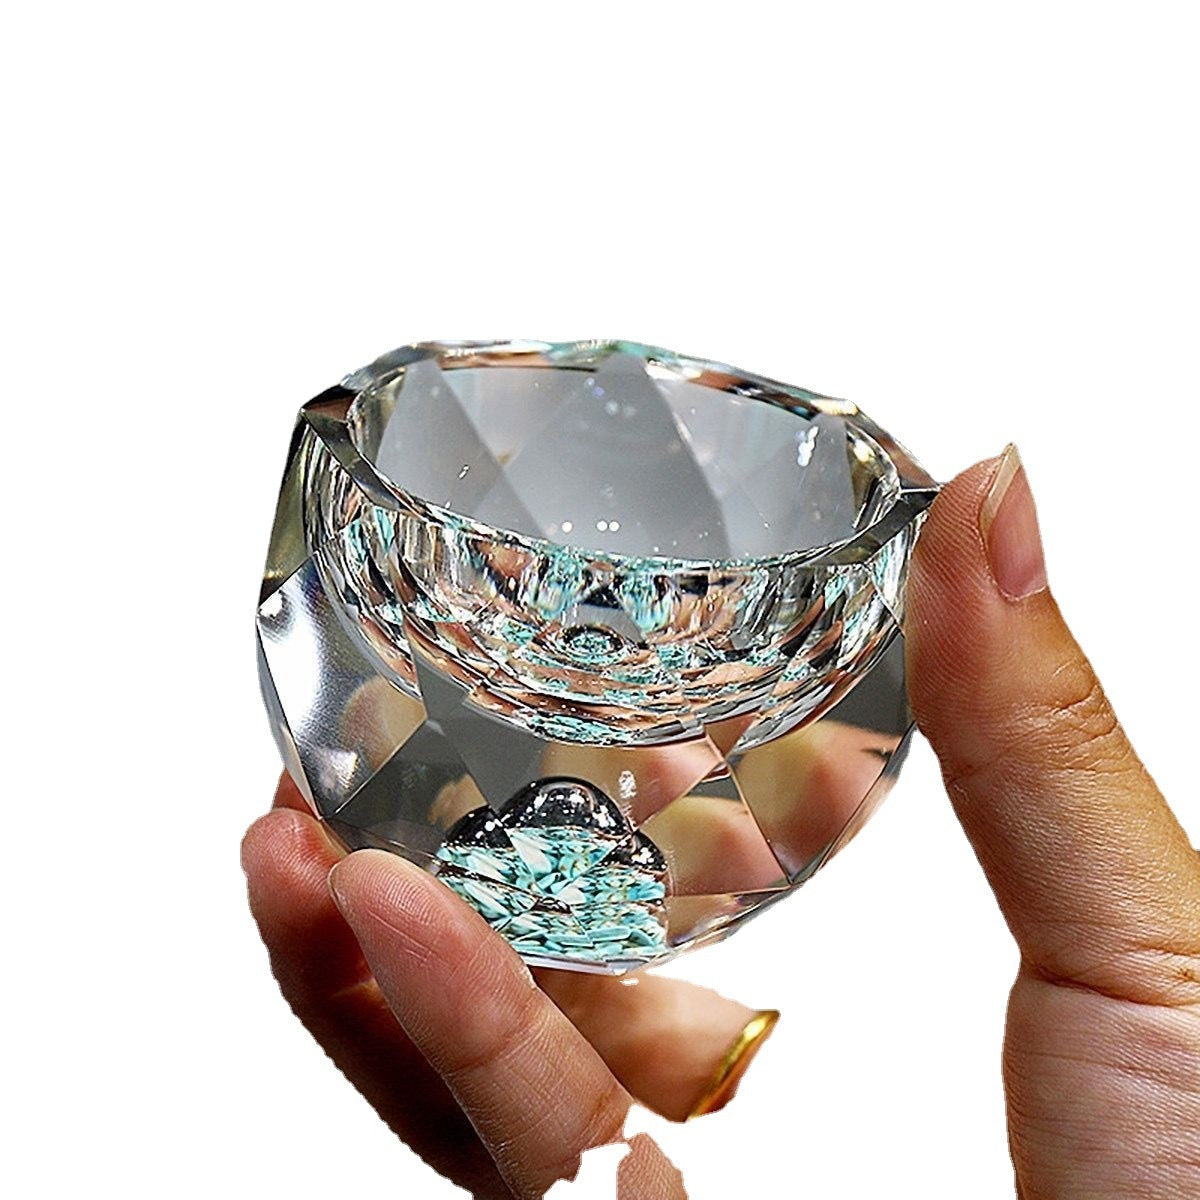 50ml diamantového řezání krystalického alkoholu Brýle vodka Stol Skleněná sklenice Whisky Glass Sklapci Sake Soju Brandy čajový šálek